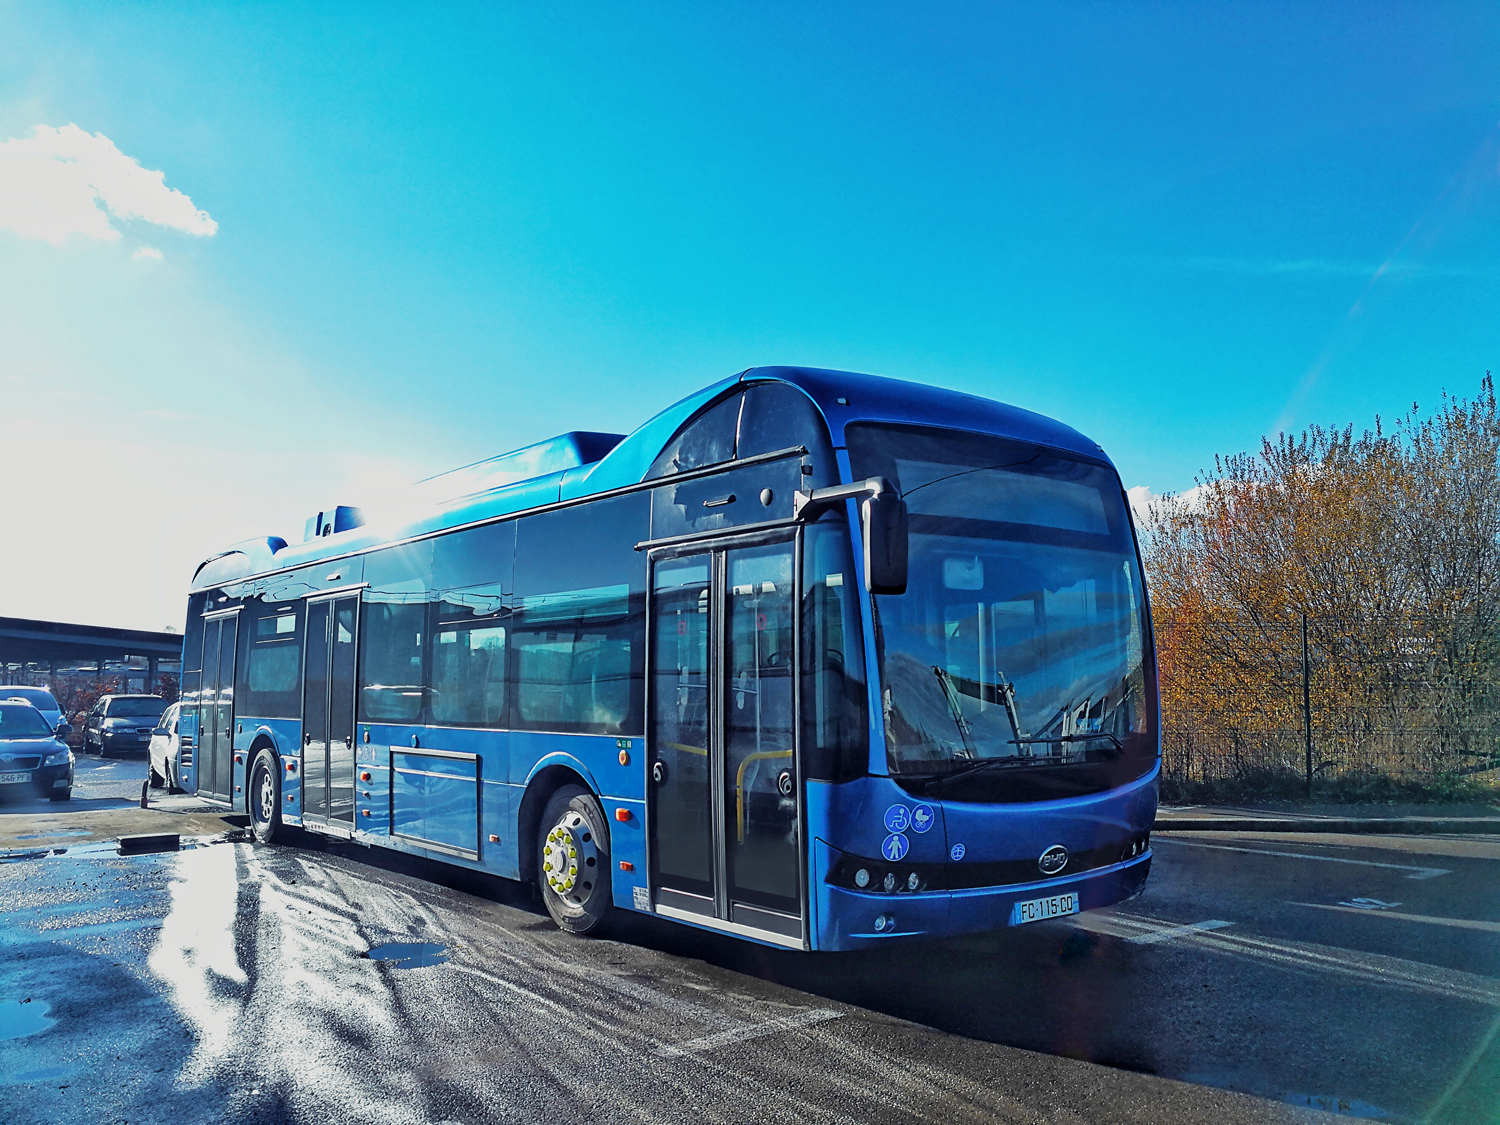 Τα νέα 12μέτρα λεωφορεία φορτίζουν το βράδυ στο ντεπό της εταιρείας και έχουν αυτονομία κίνησης έως και 160 χλμ.